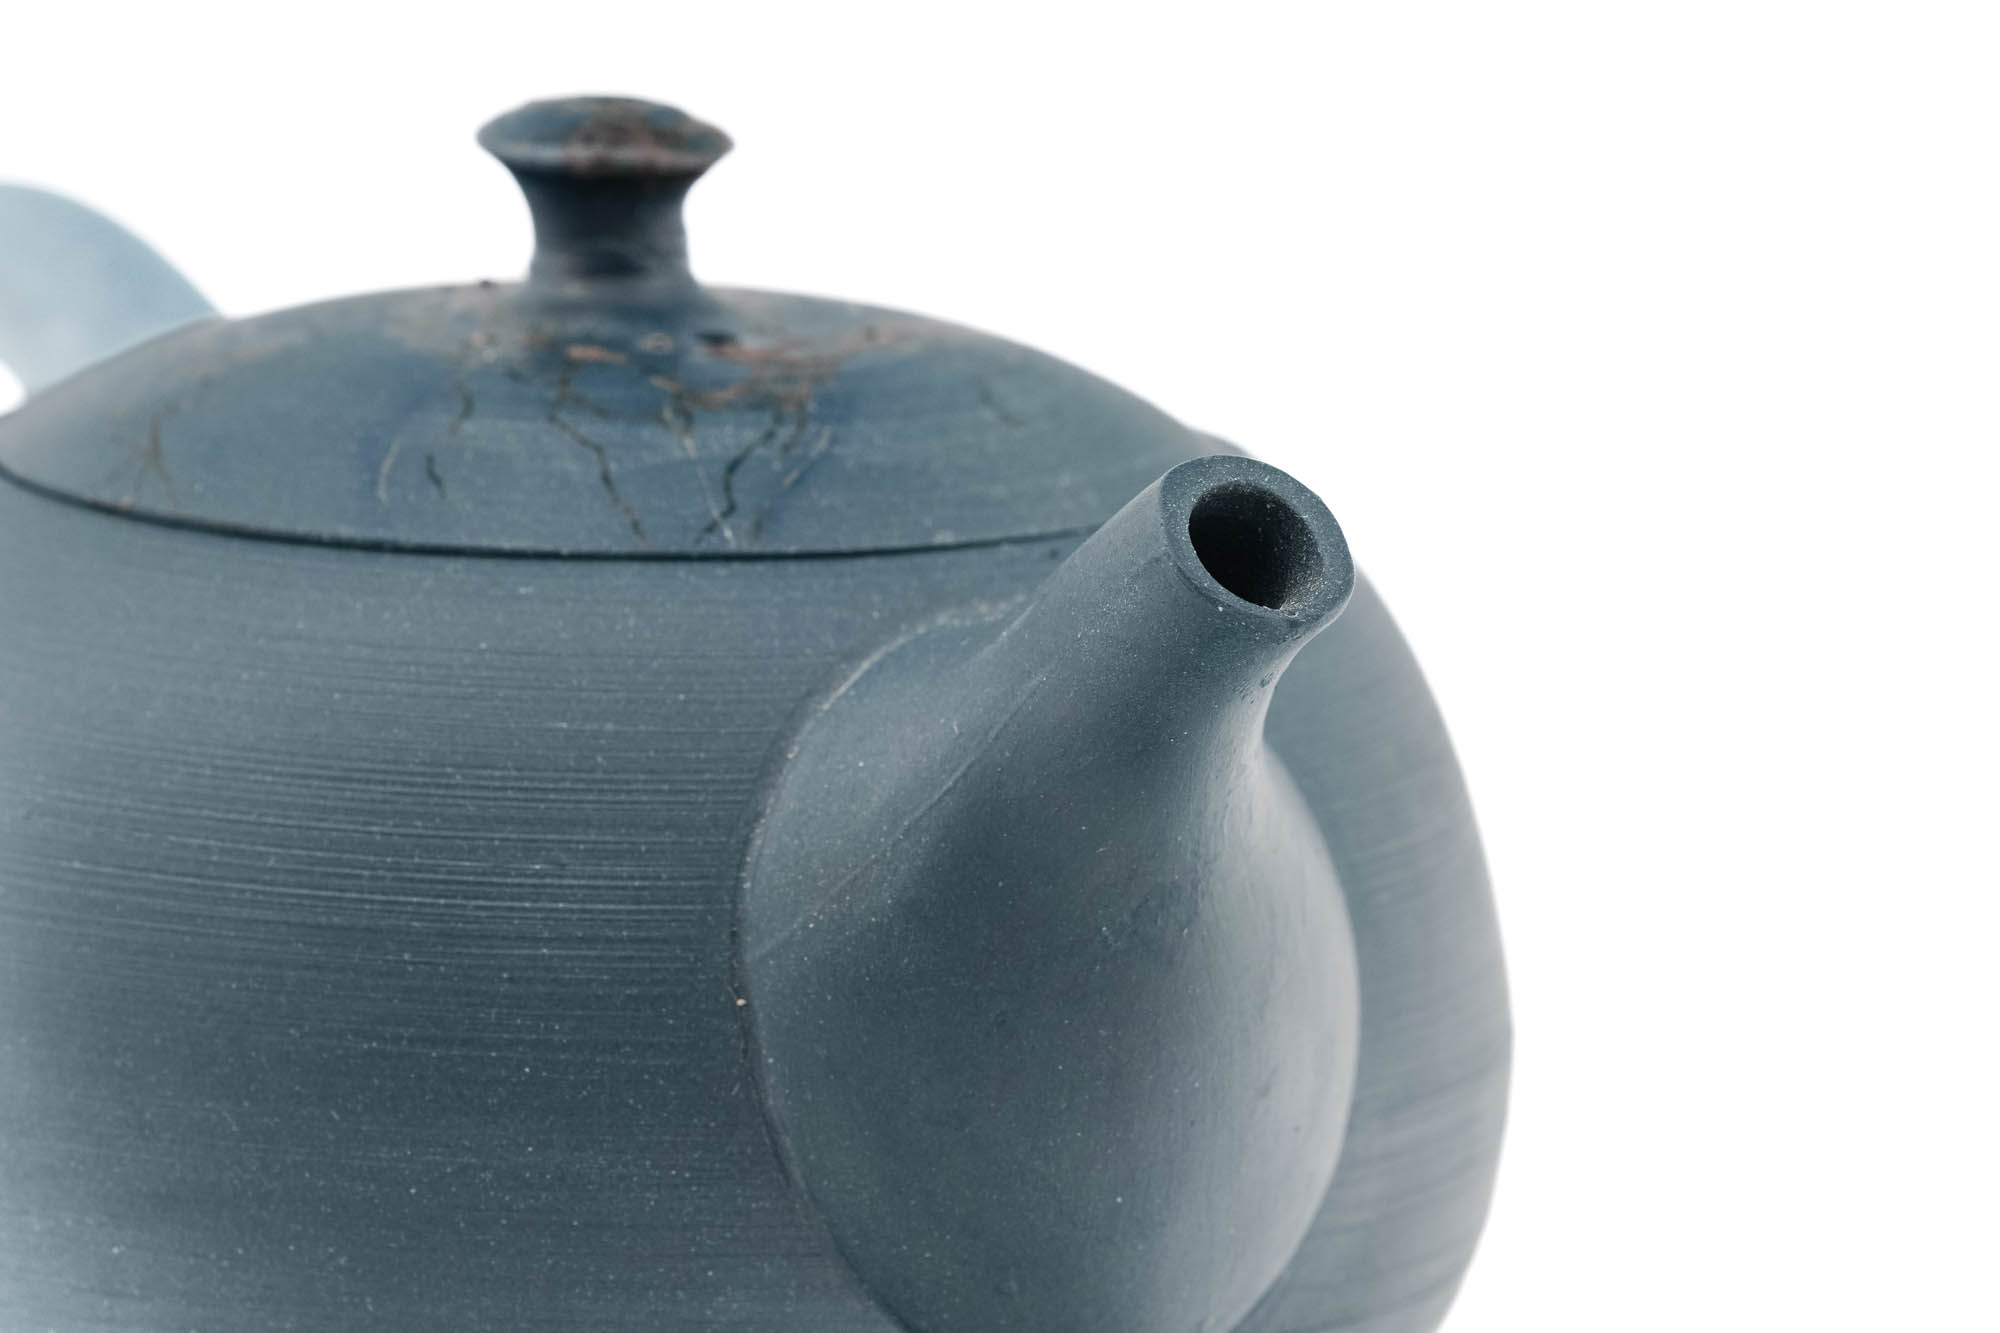 Japanese Kyusu - 原三窯 Genzou Kiln - Blue Mogake Tokoname-yaki Rear-Handled Teapot - 200ml